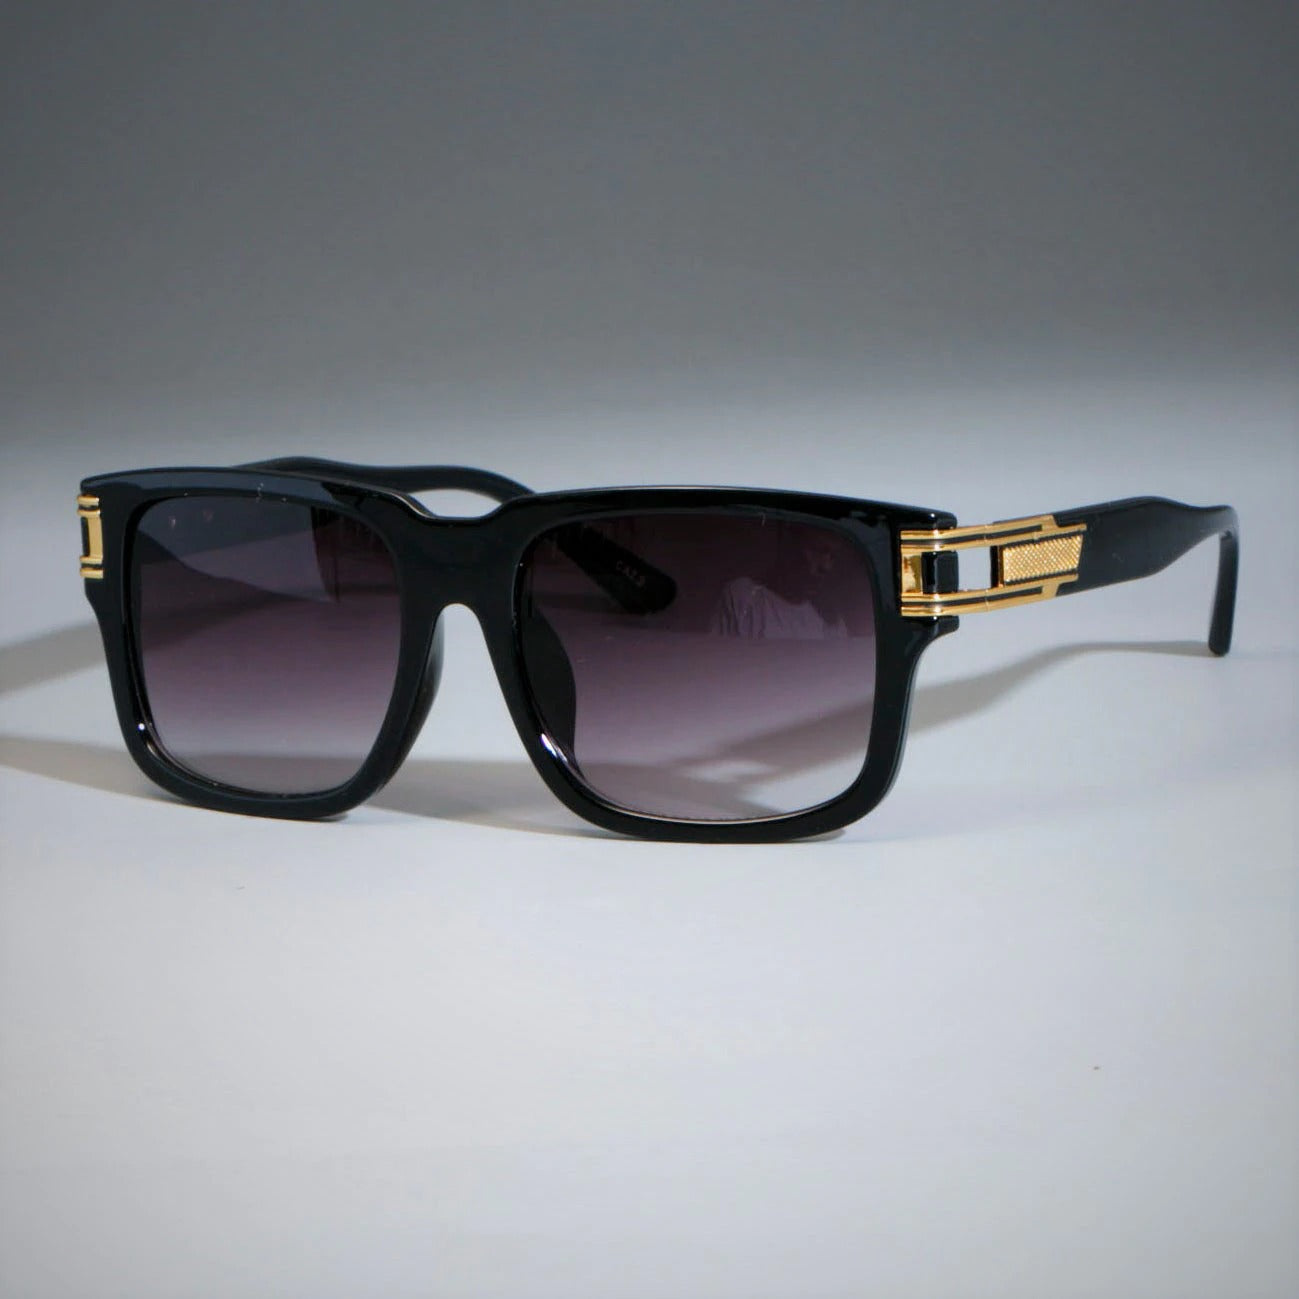 Buy New Vintage Thick Square Sunglasses Men Women- Jackmarc